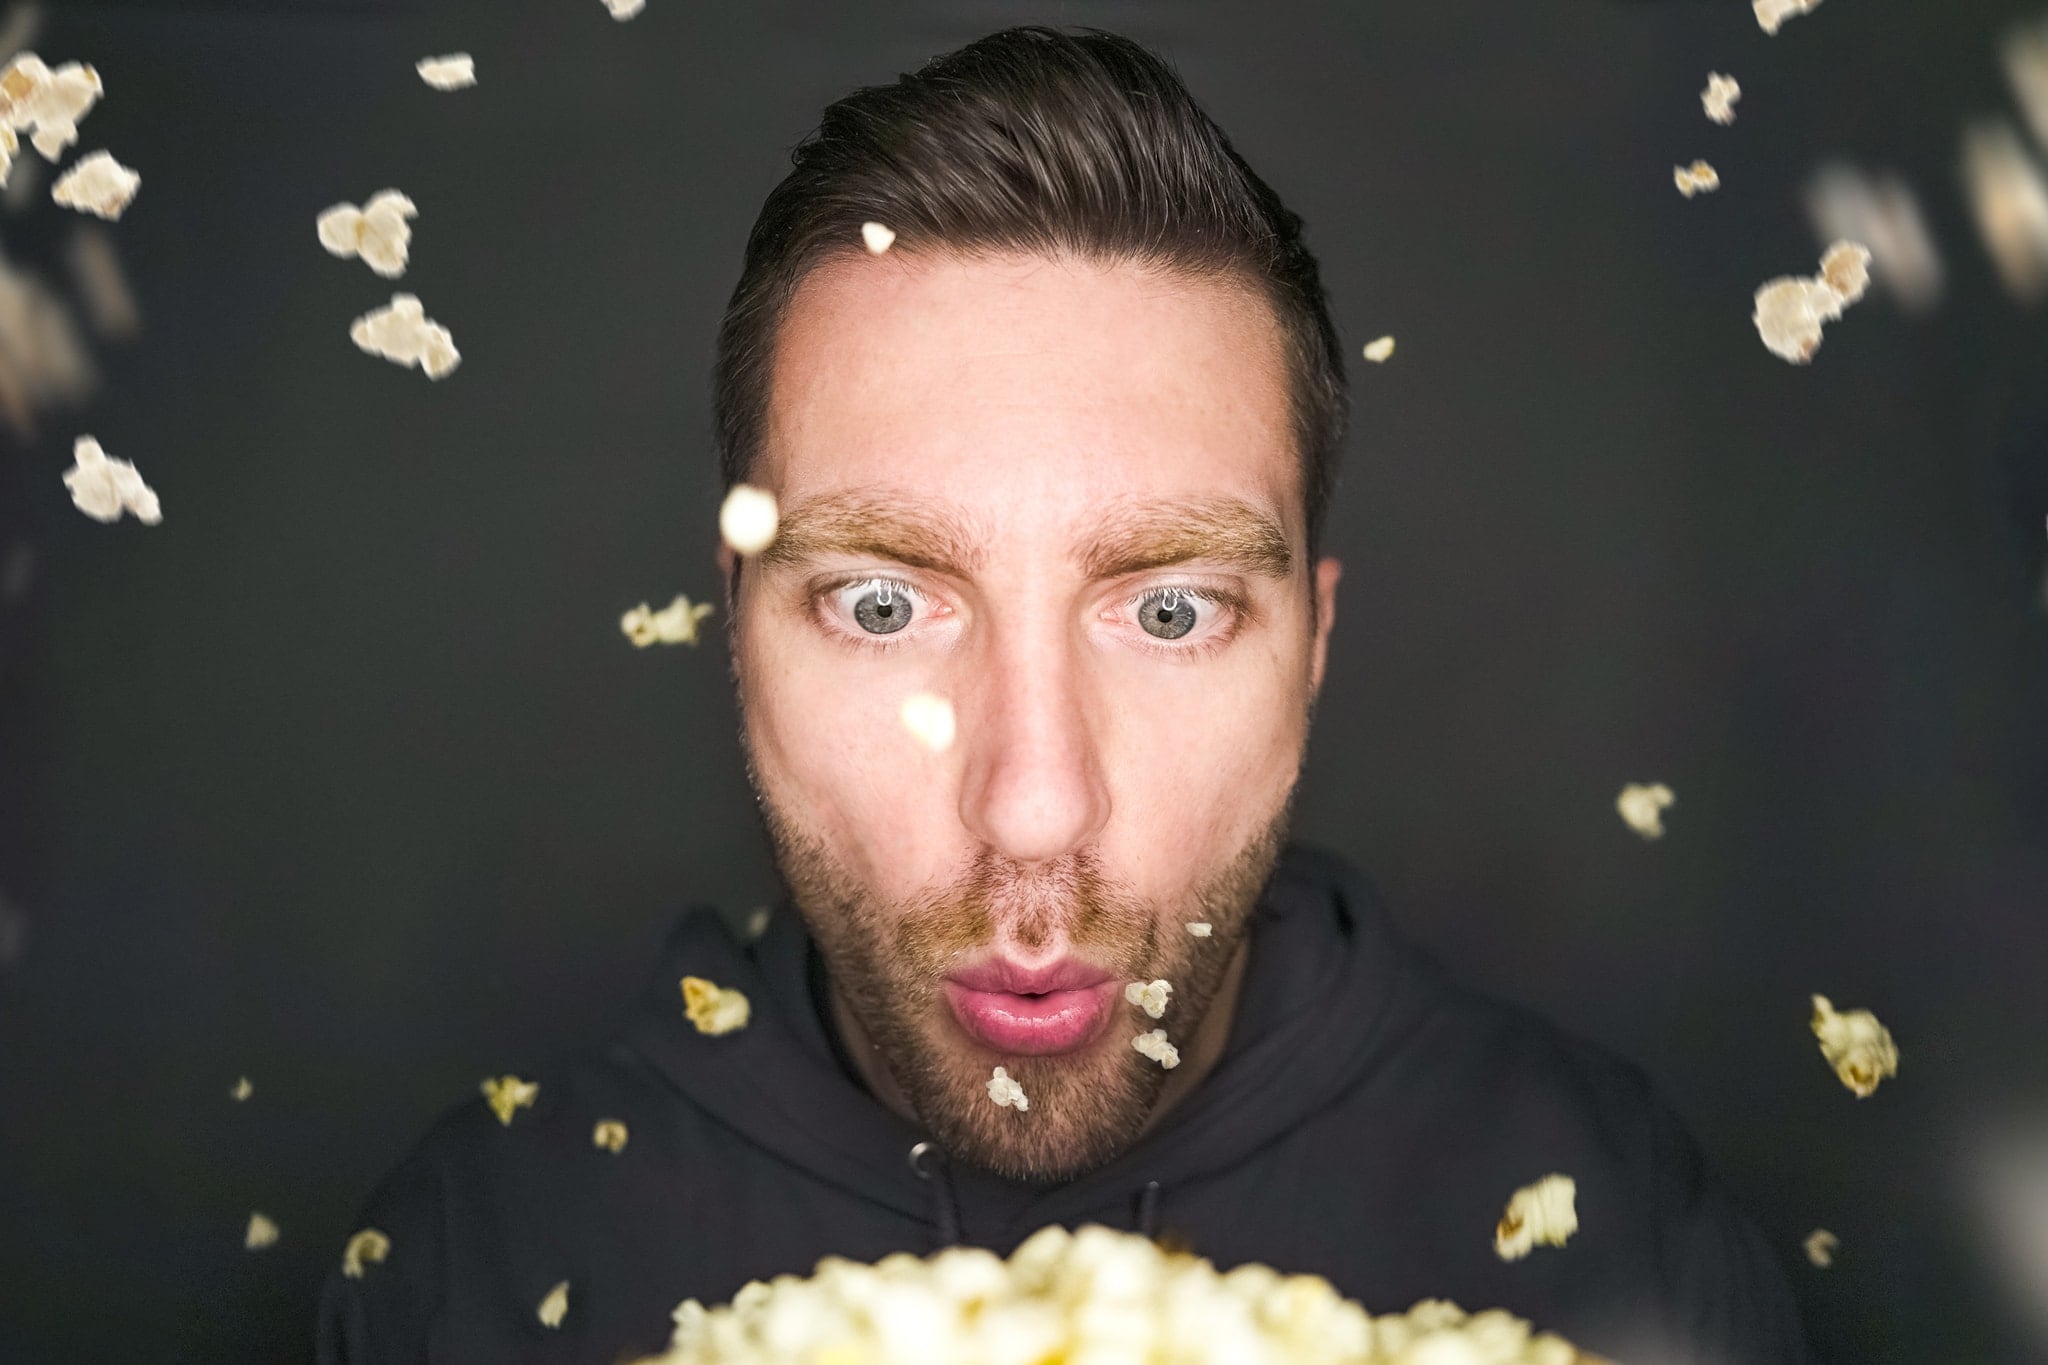 Tim-2-popcorn-website